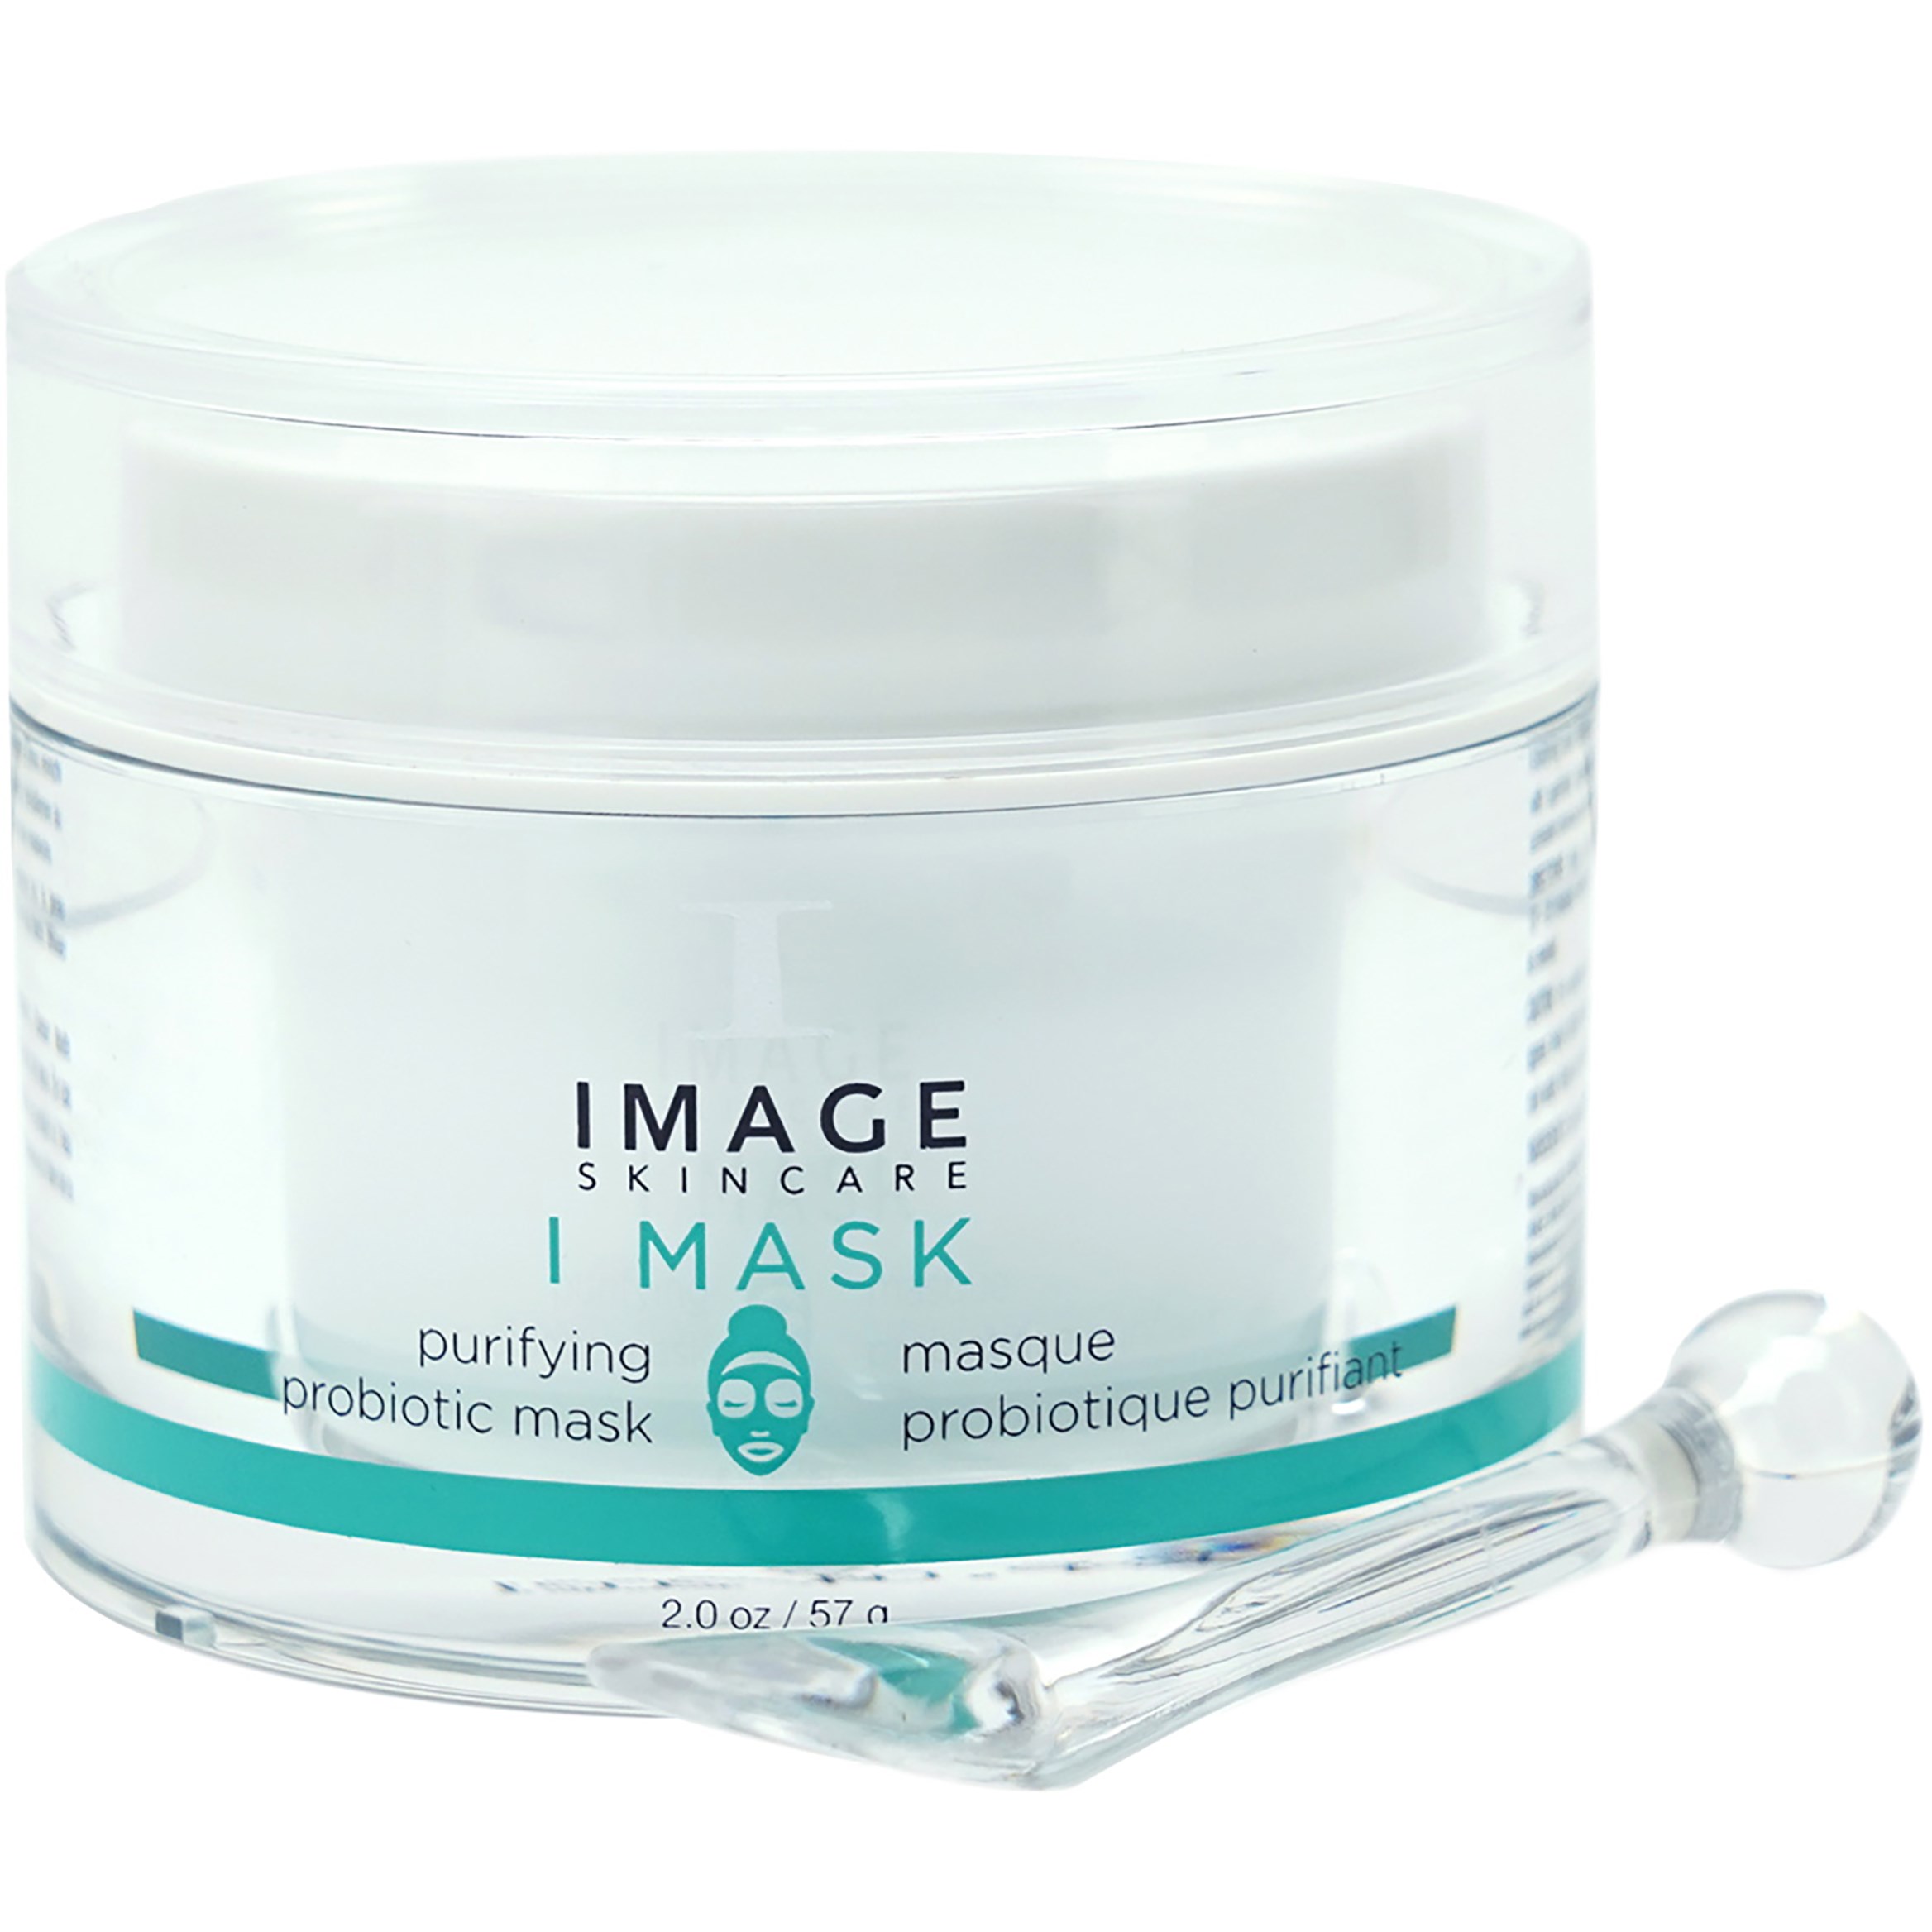 IMAGE Skincare I Mask Purifying Probiotic Mask 57 g